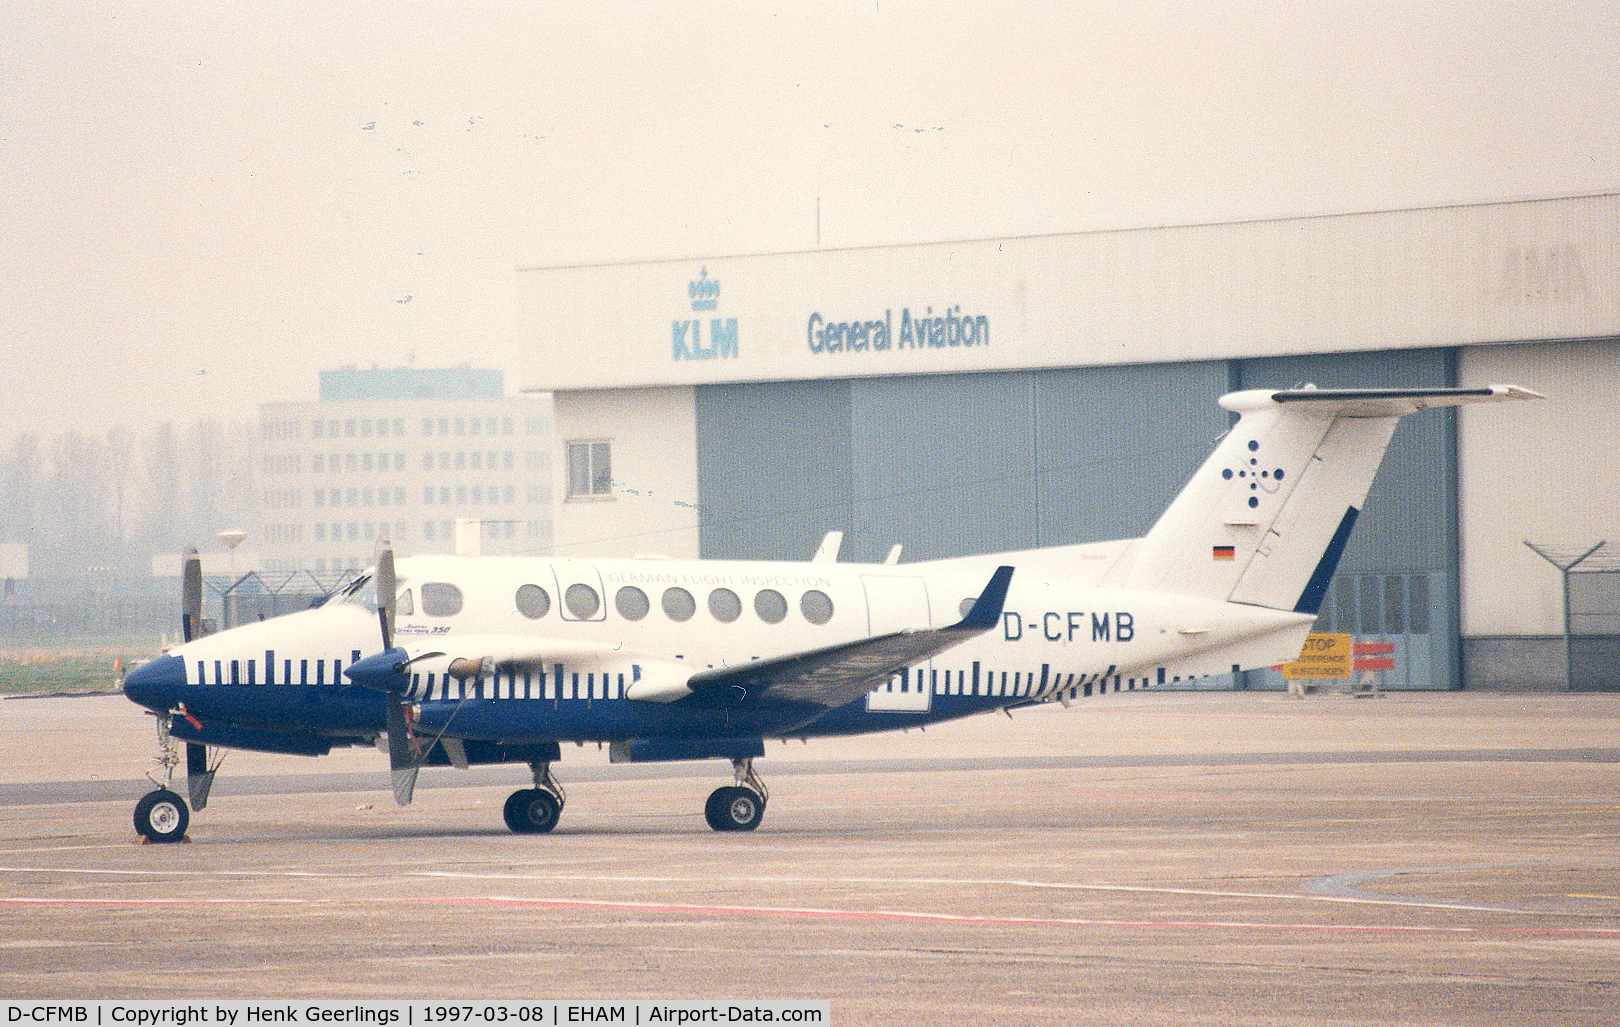 D-CFMB, 1993 Beech King Air 350 C/N FL-97, DFS - German Flight Inspection